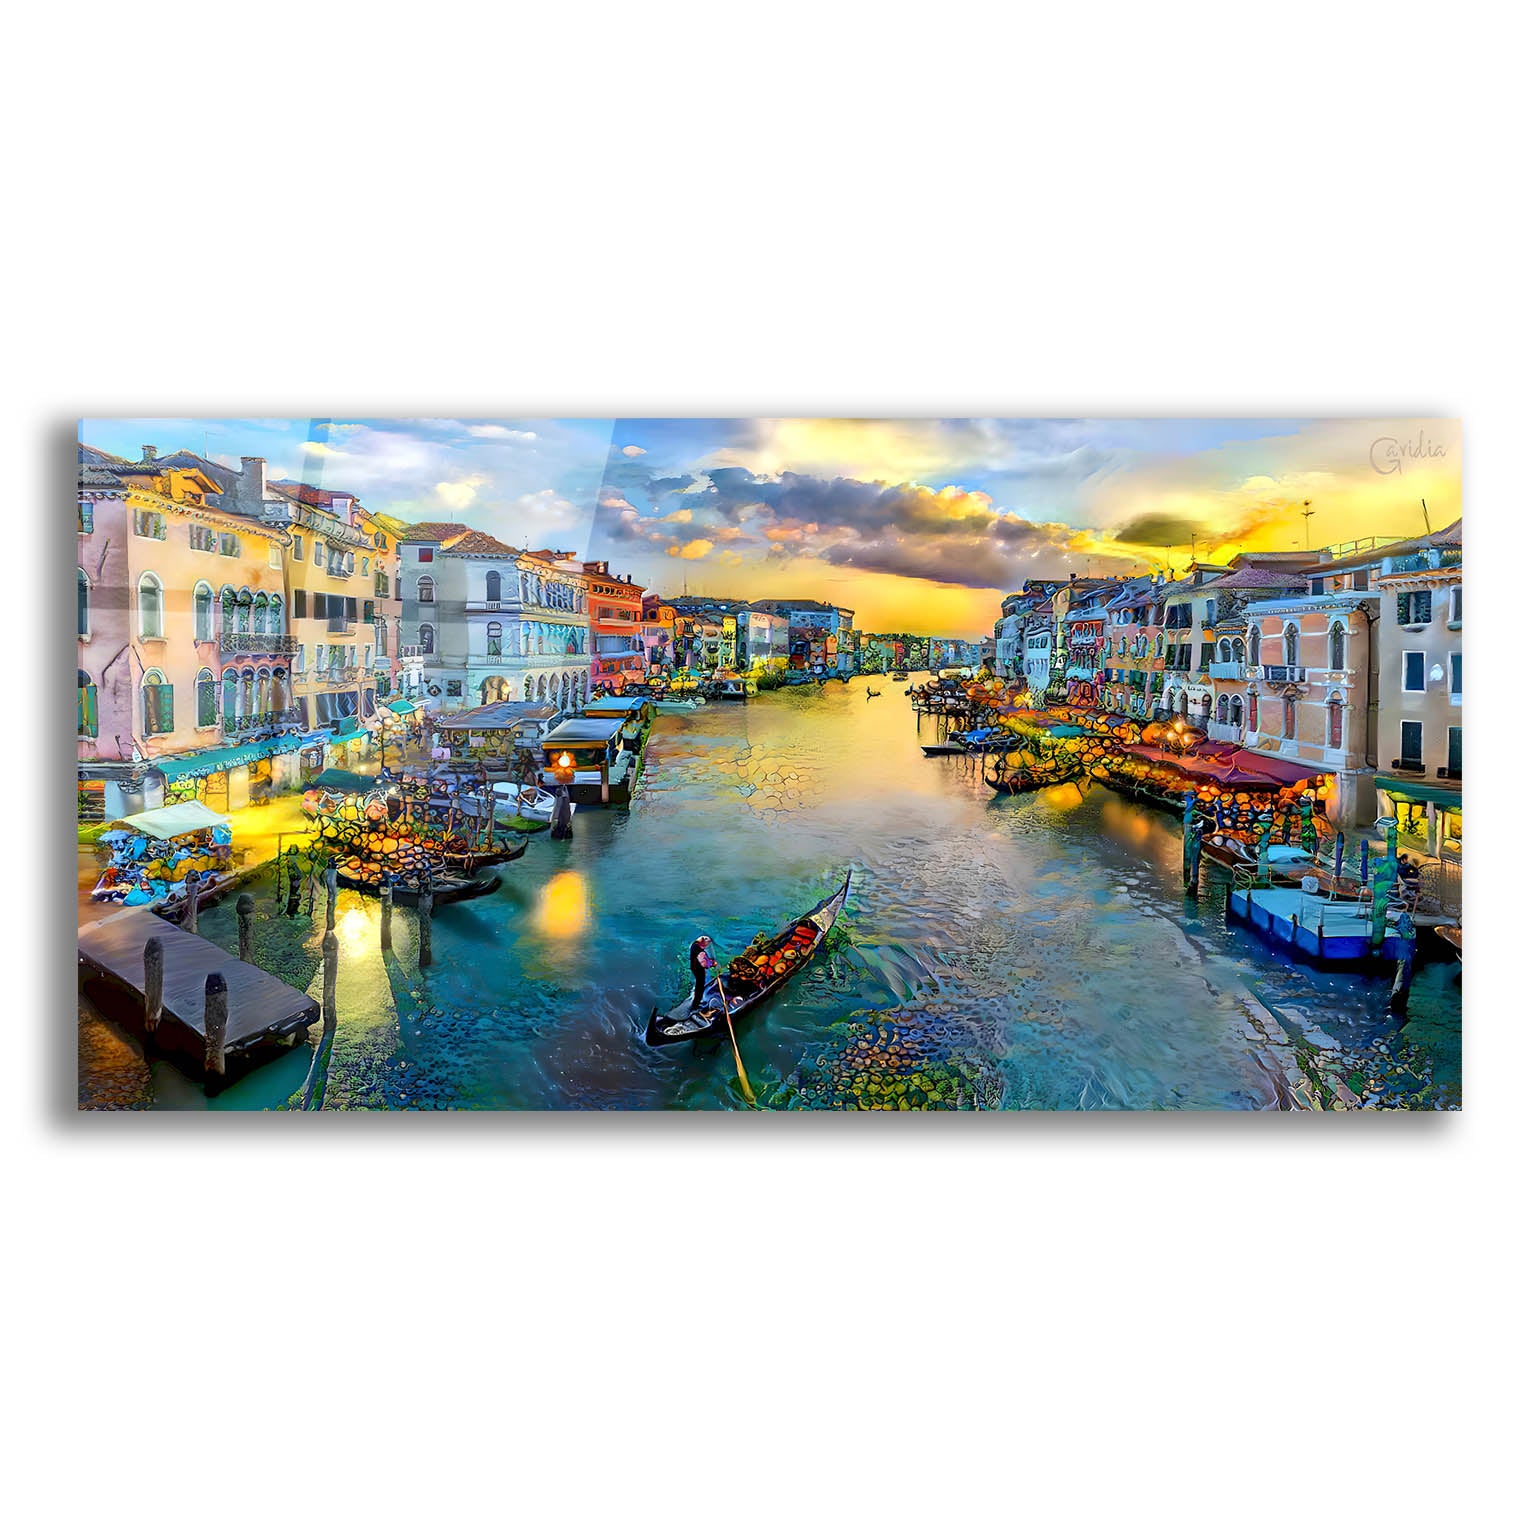 Epic Art 'Venice Italy Grand Canal' by Pedro Gavidia, Acrylic Glass Wall Art,24x12